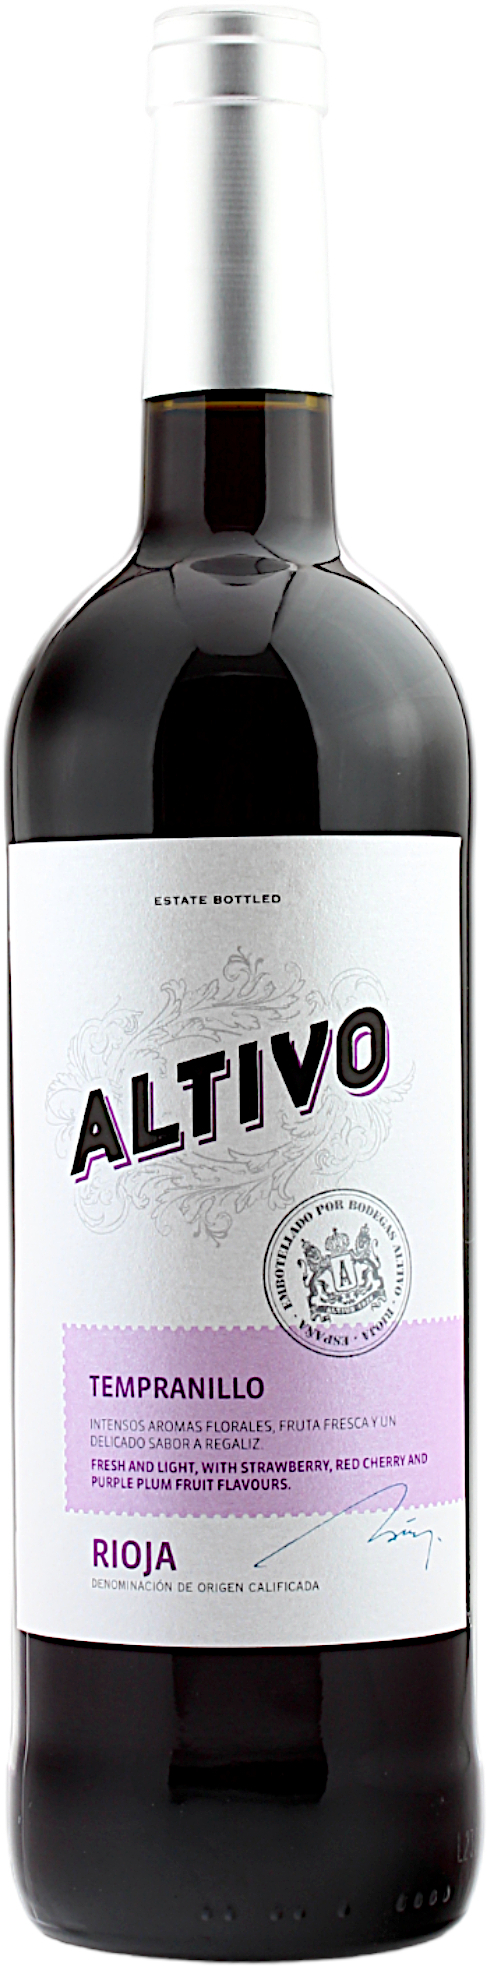 Altivo Tempranillo Rioja 13.0% 0,75l